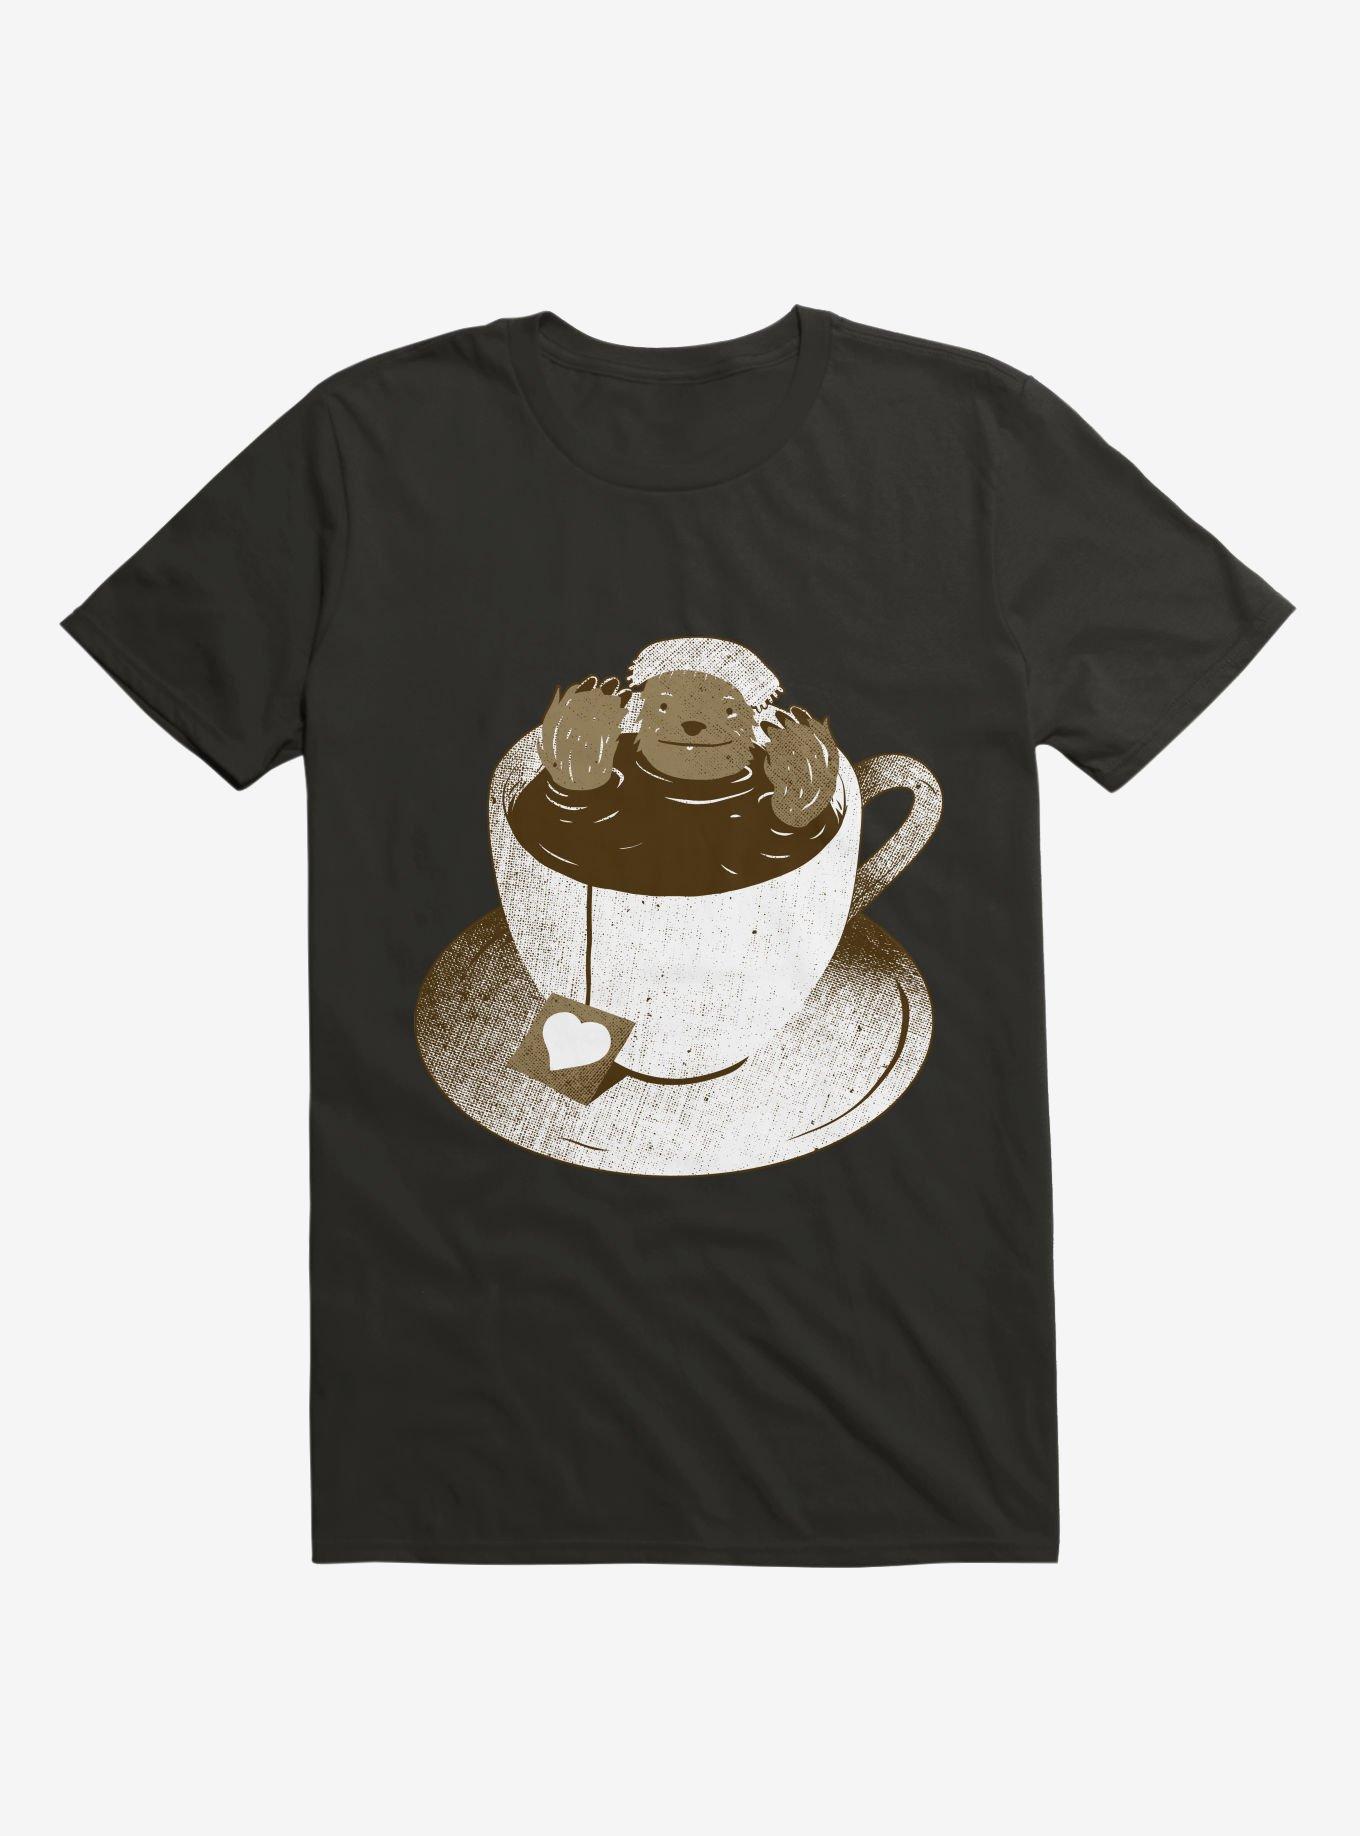 Monday Bath Sloth Coffee Black T-Shirt